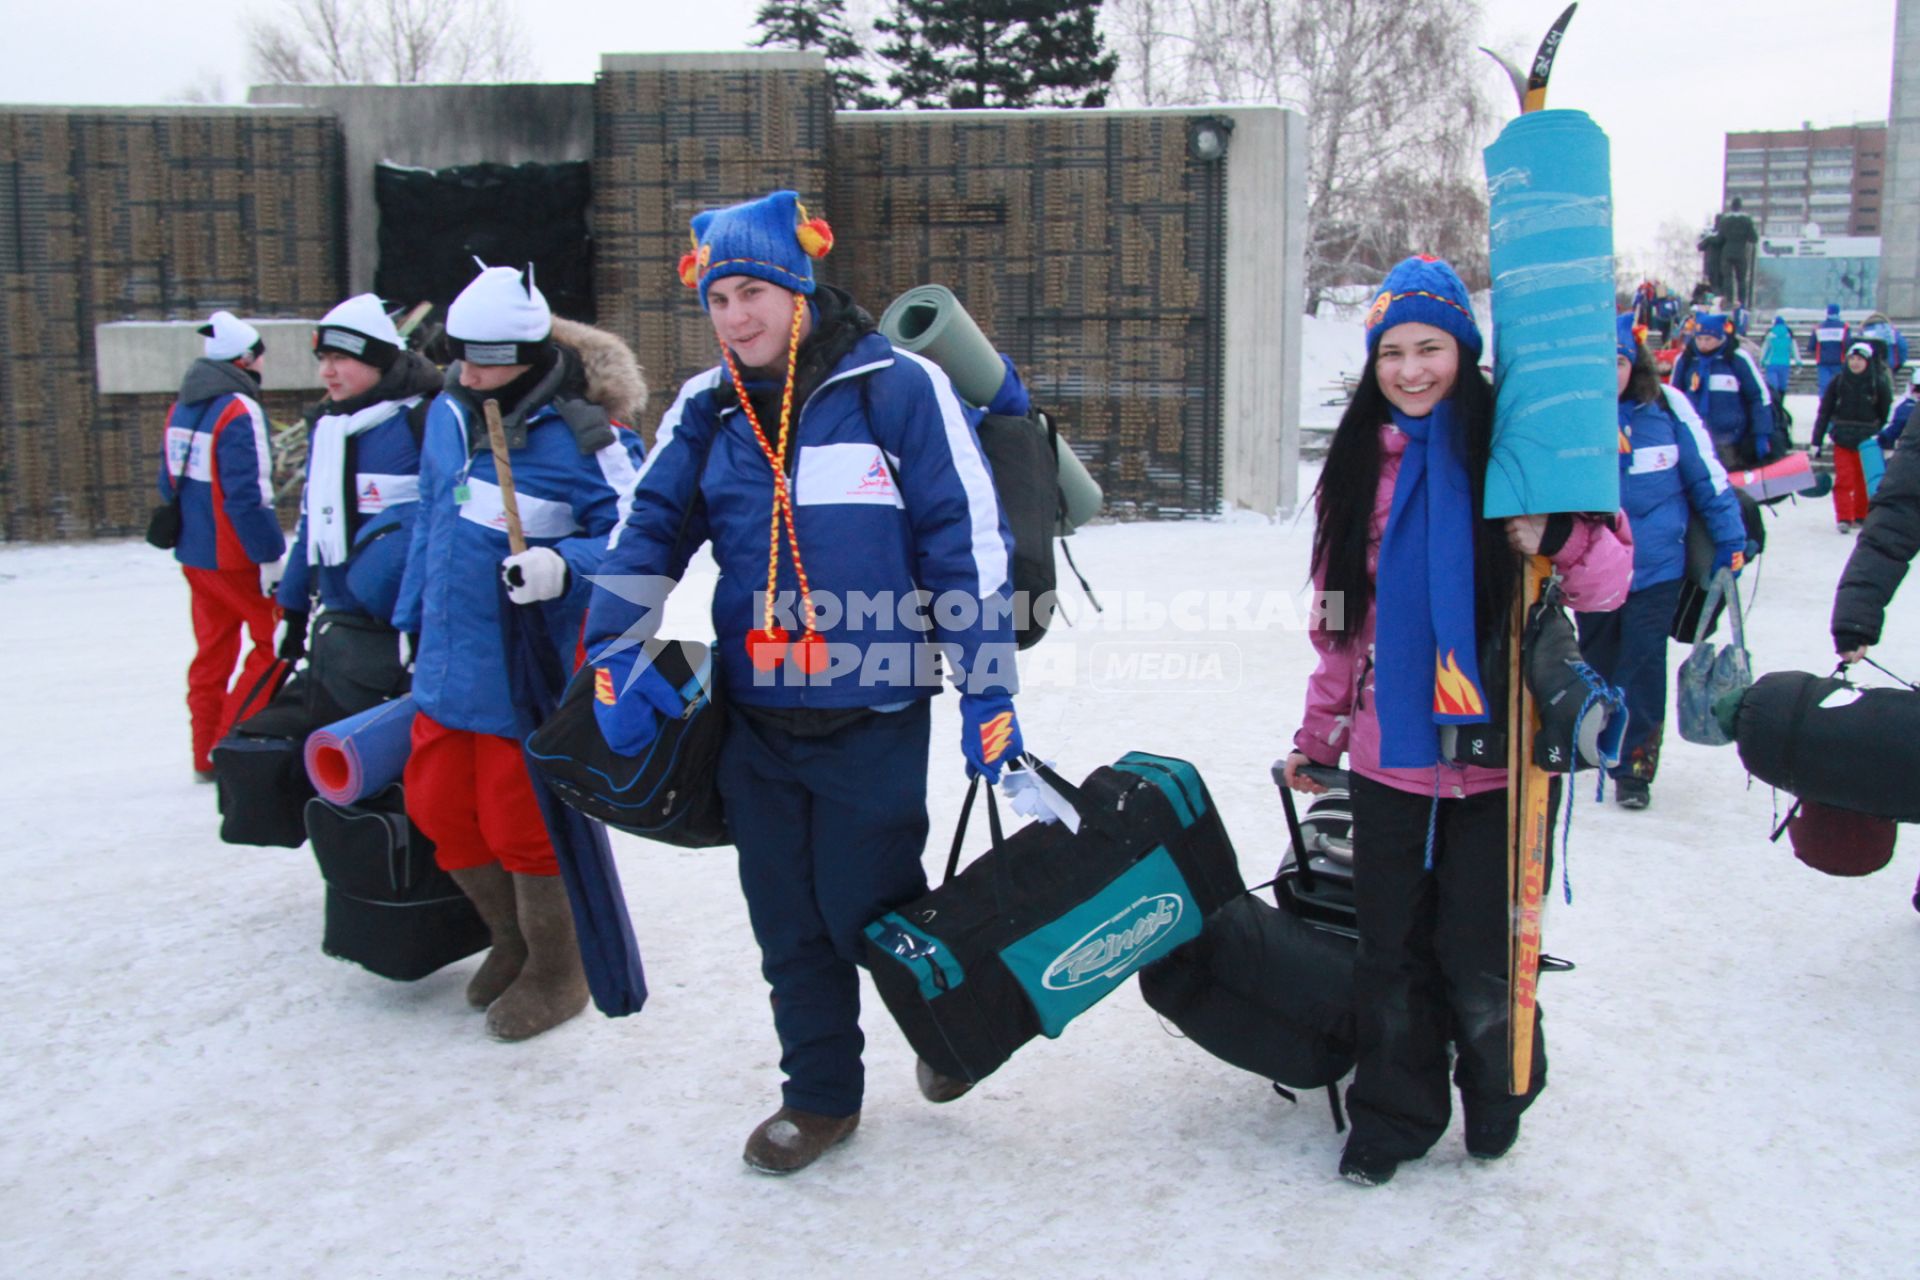 Старт патриотическая акции `Снежный десант`. На снимке: группа молодых людей в ярких костюмах с походными атрибутами: палатка, полиуретановый коврик.